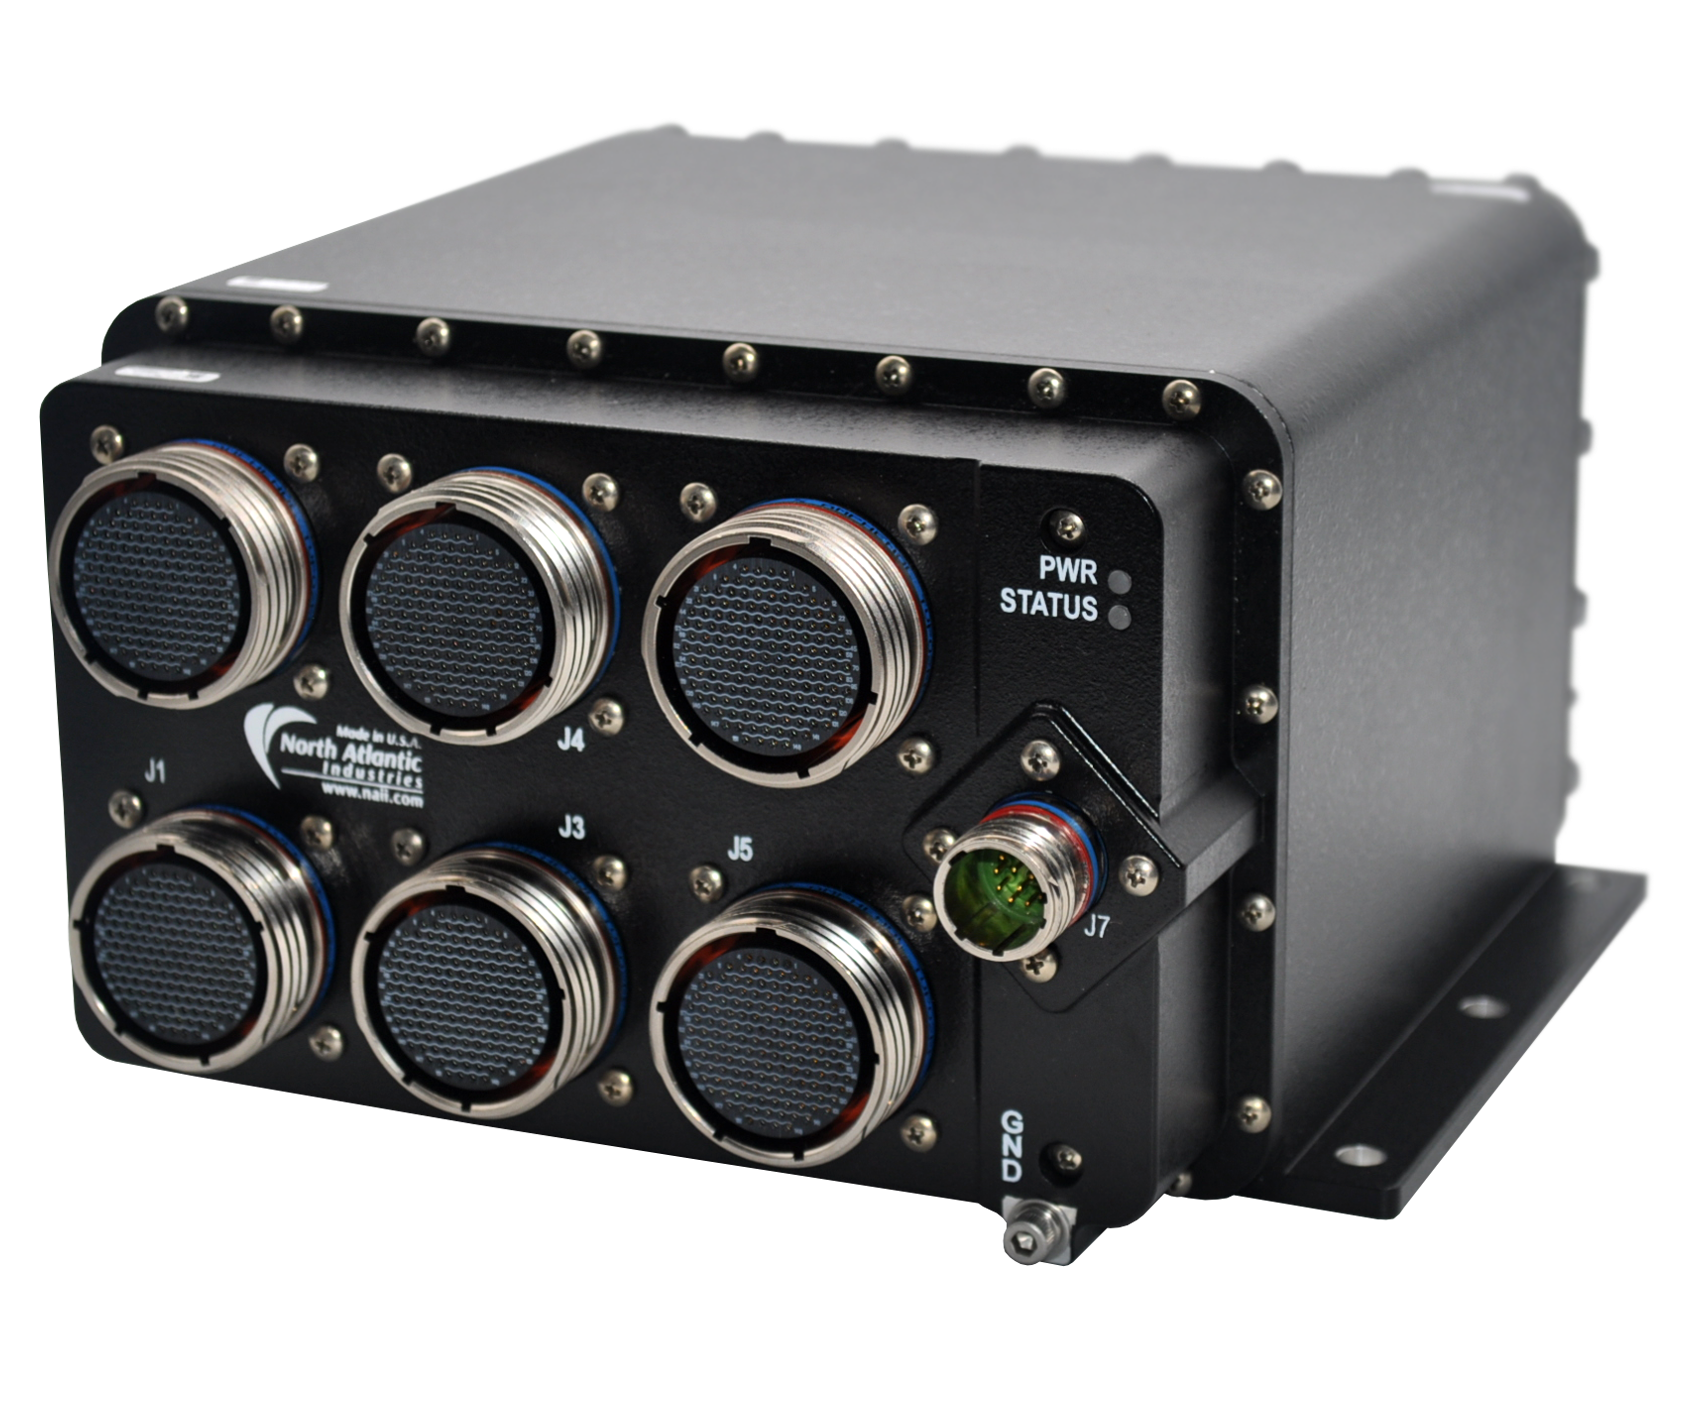 North Atlantic SIU36-RIUVARM-01 Remote Interface Units (RIU)